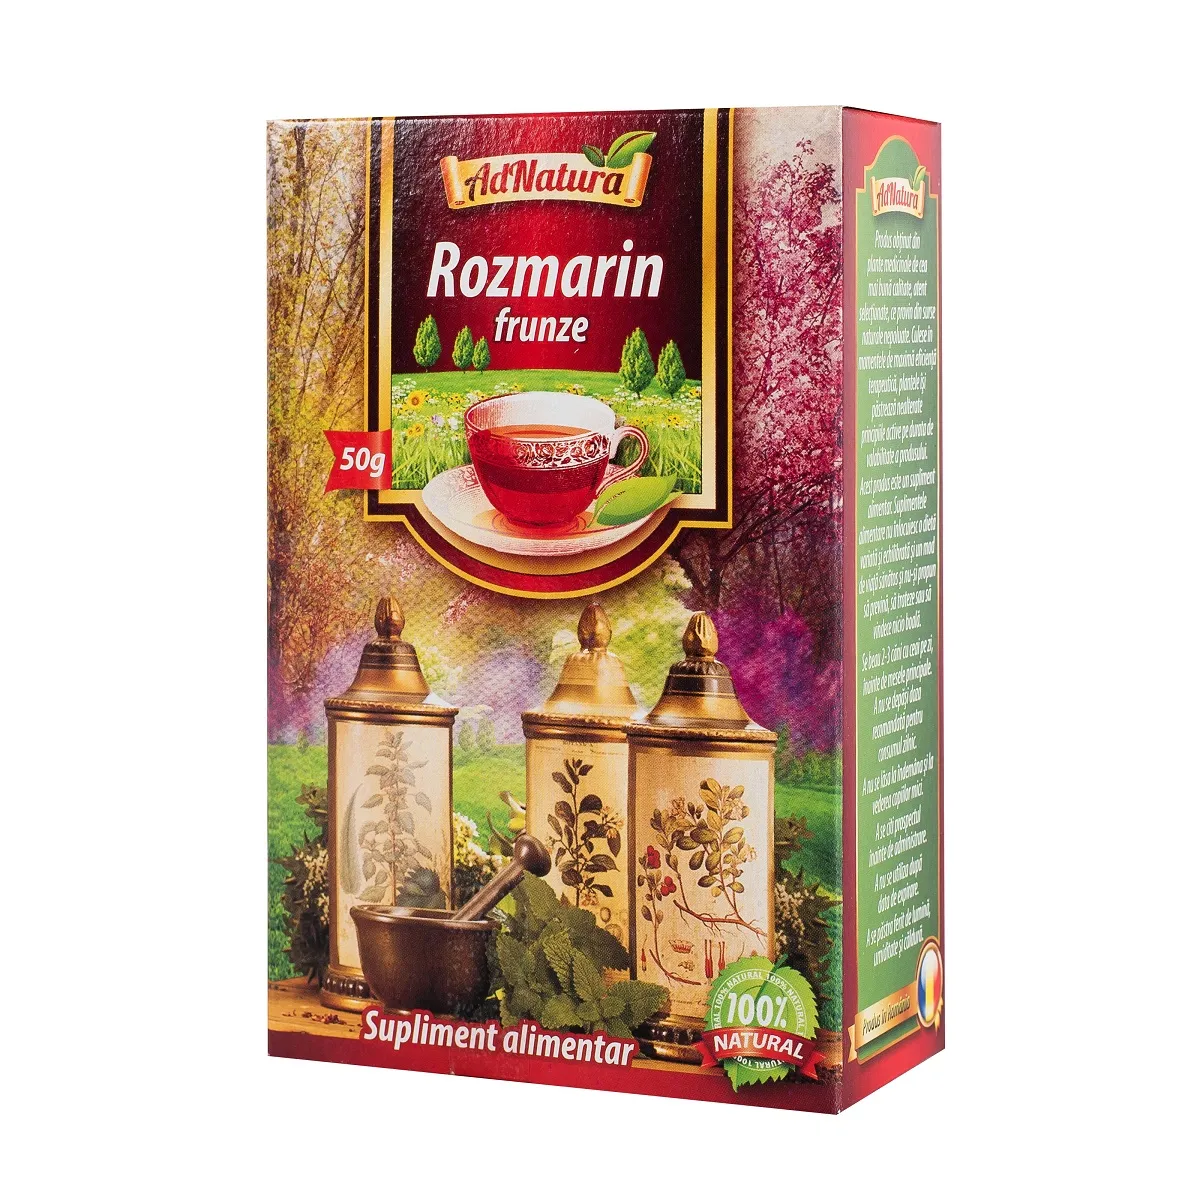 Ceai de rozmarin, 50g, AdNatura